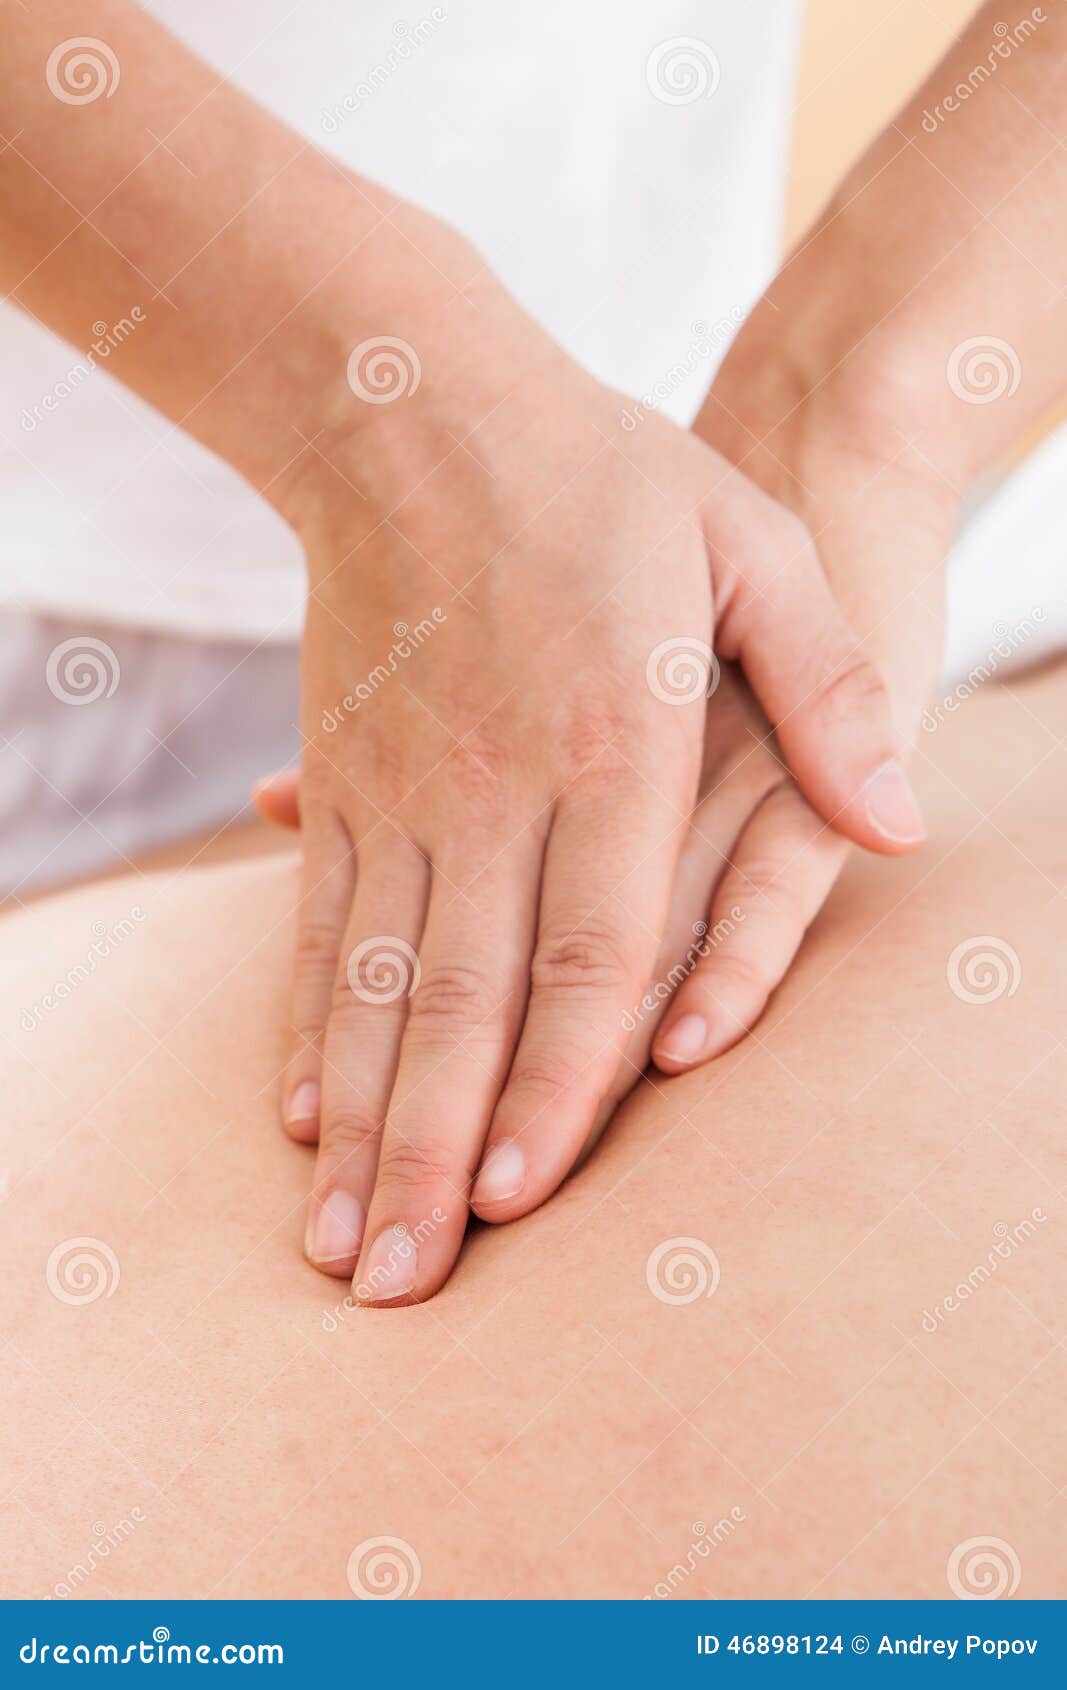 Female Massage Tube